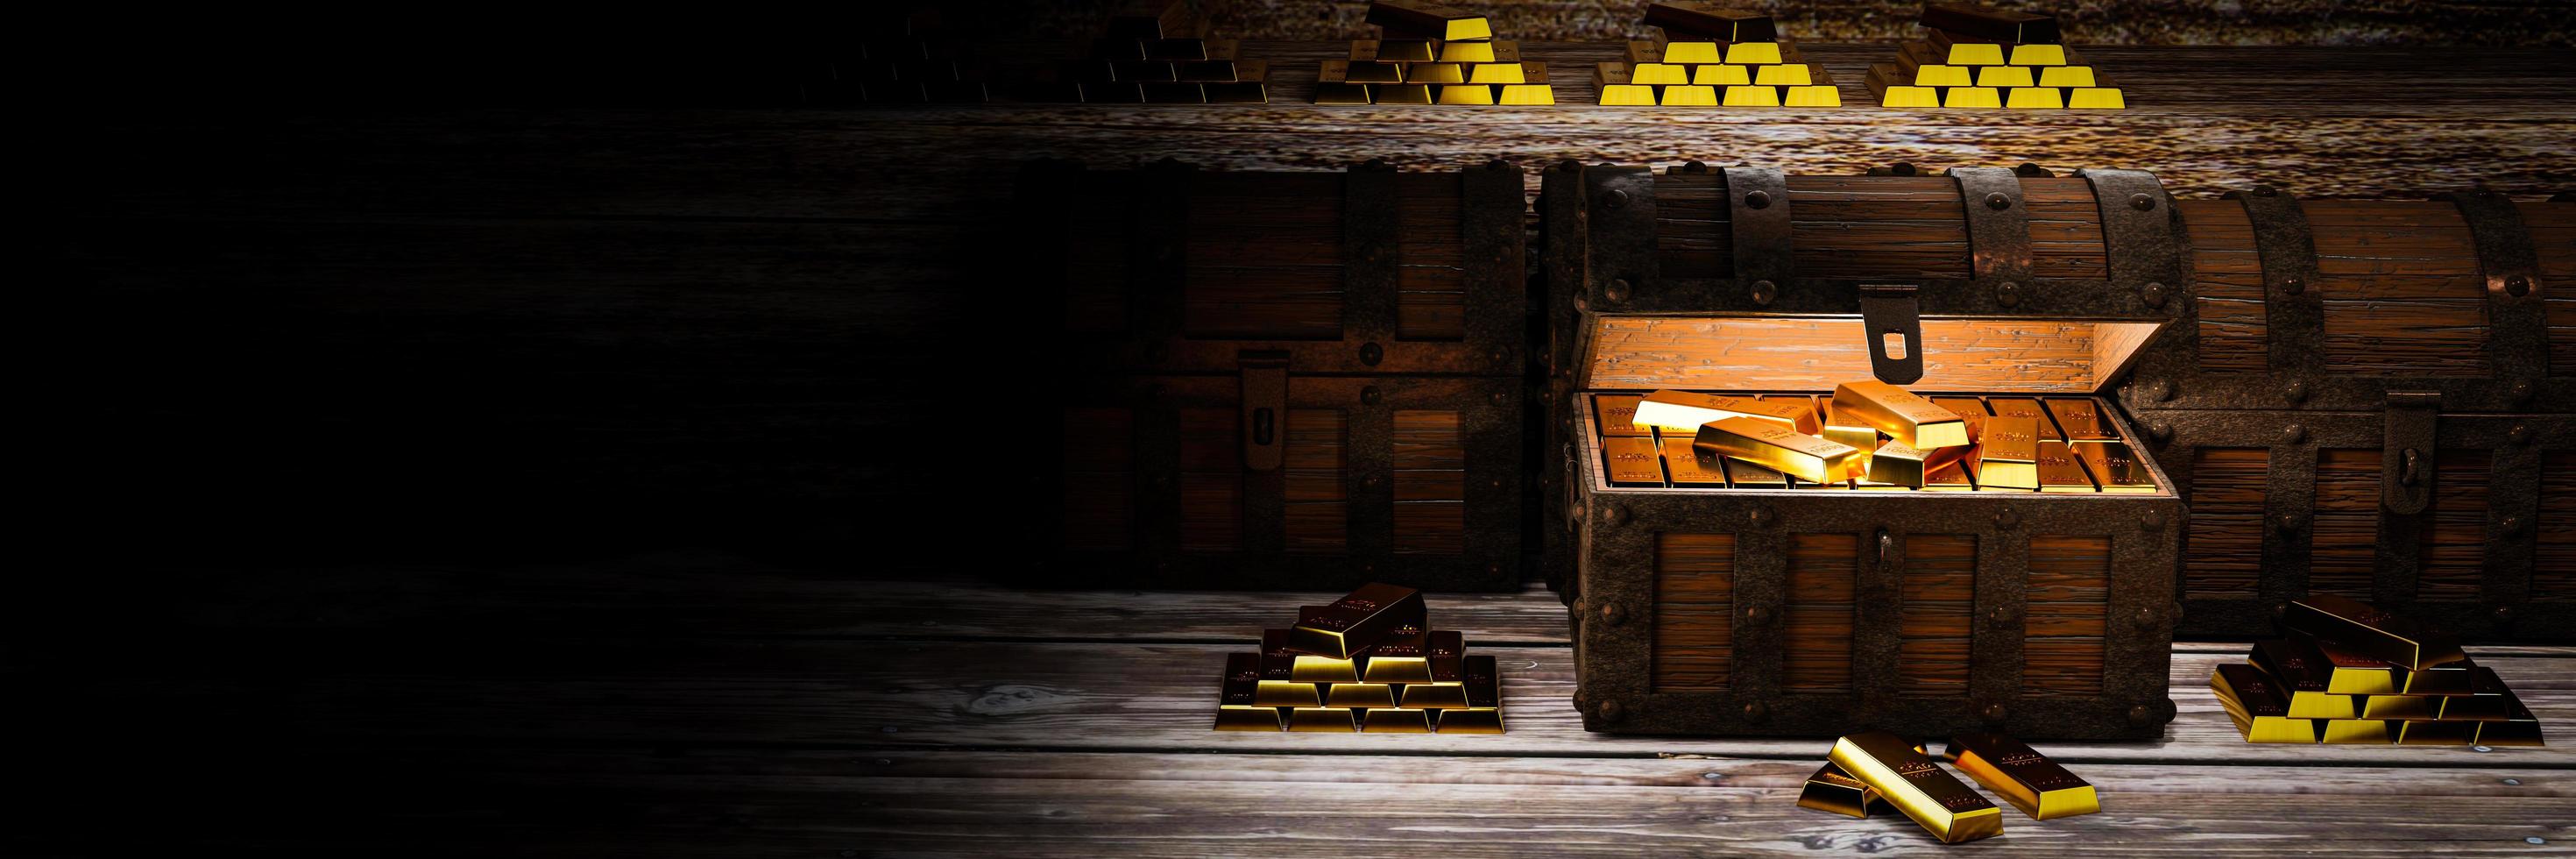 Goldbarren oder Barren werden in eine Schatztruhe gelegt. Die Schatzkiste ist aus altem rostigem Metallholz, im Inneren befindet sich ein Goldbarren. die beliebtesten Vermögenswerte in der Sammlung von Investoren foto